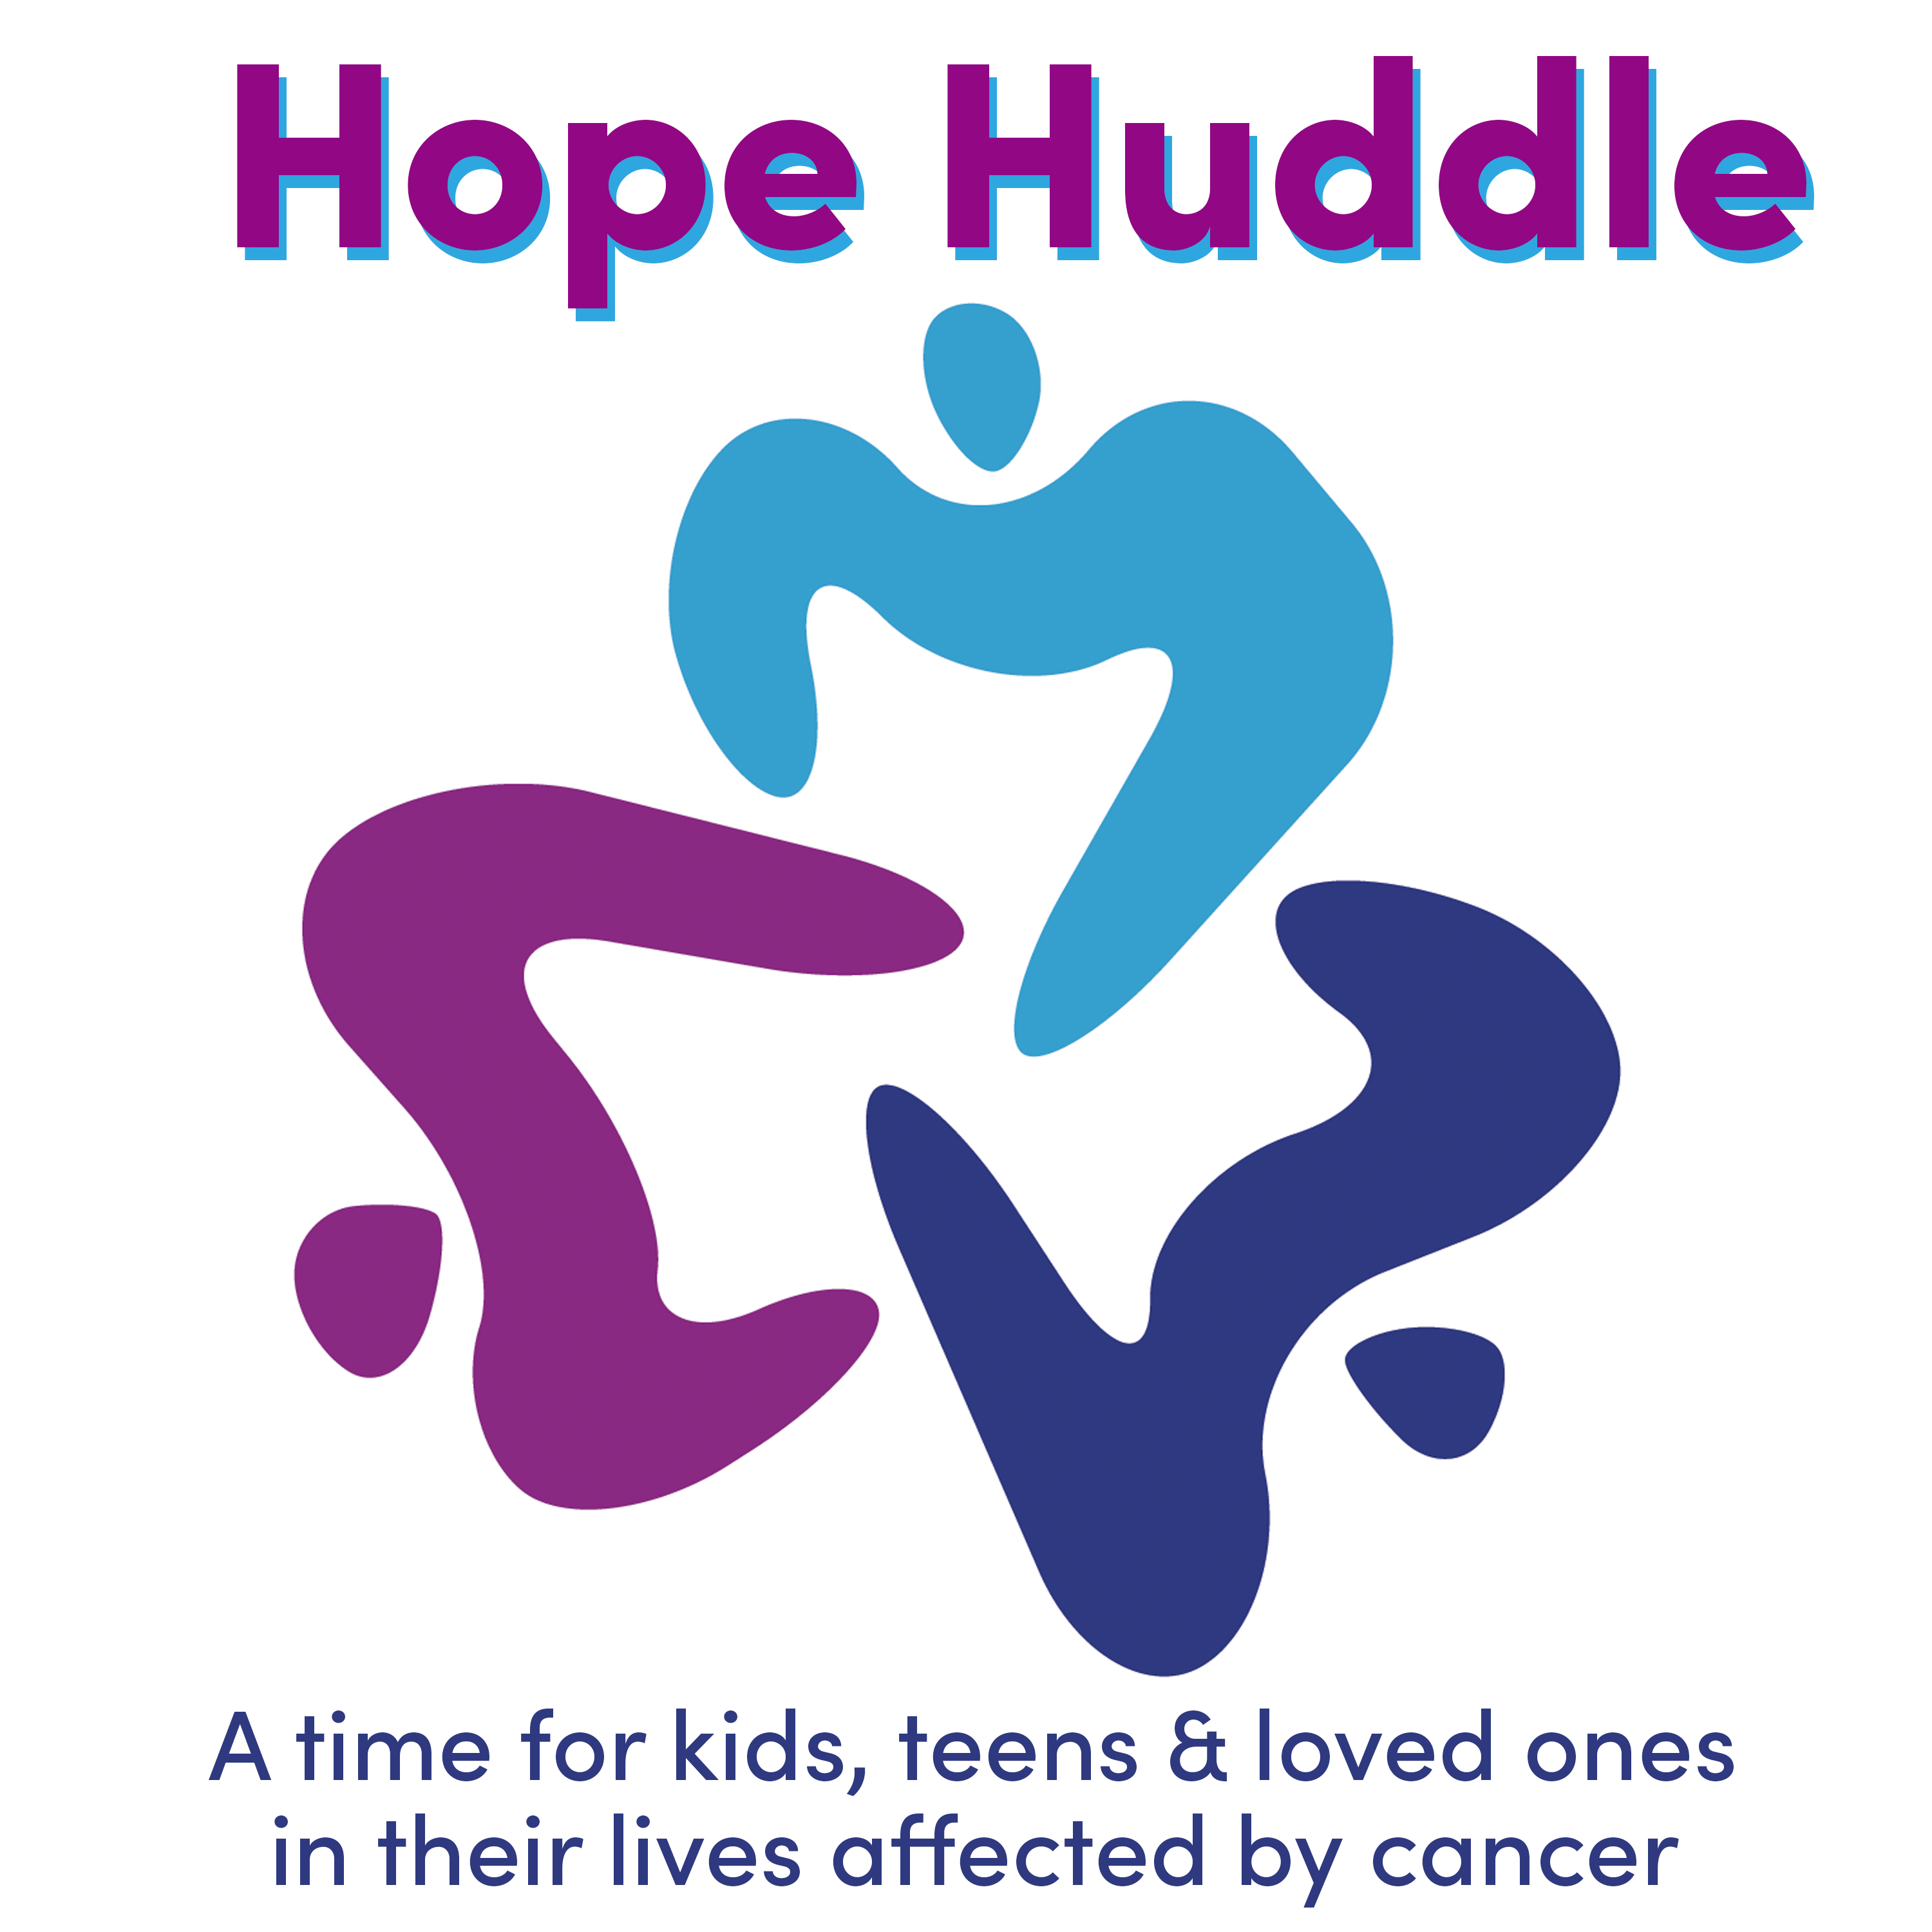 Hope Huddle